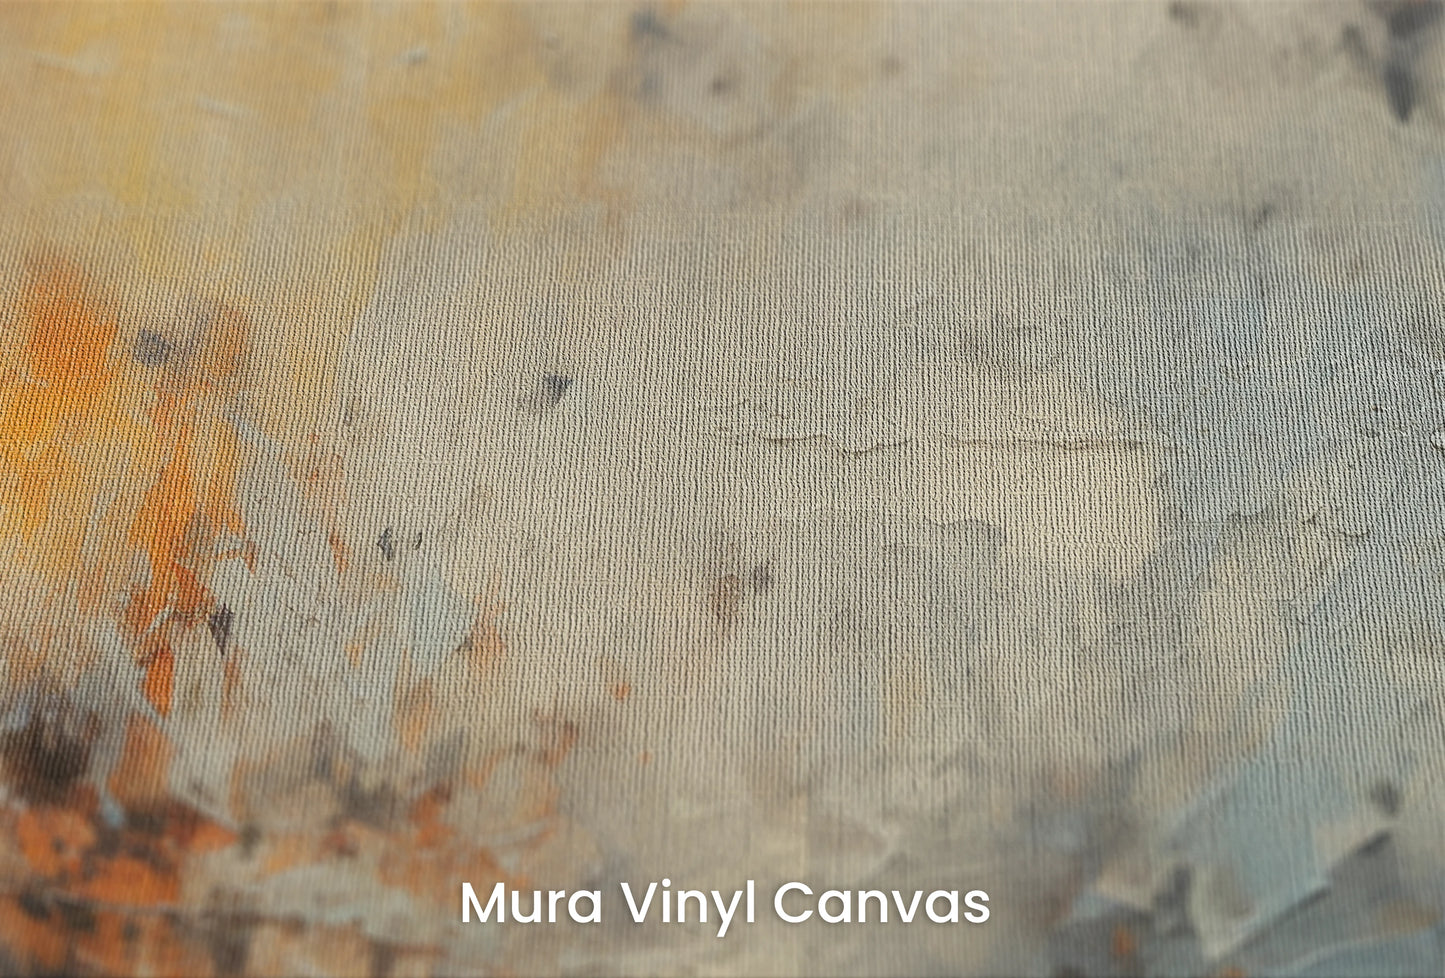 Zbliżenie na artystyczną fototapetę o nazwie Lunar Surface #3 na podłożu Mura Vinyl Canvas - faktura naturalnego płótna.